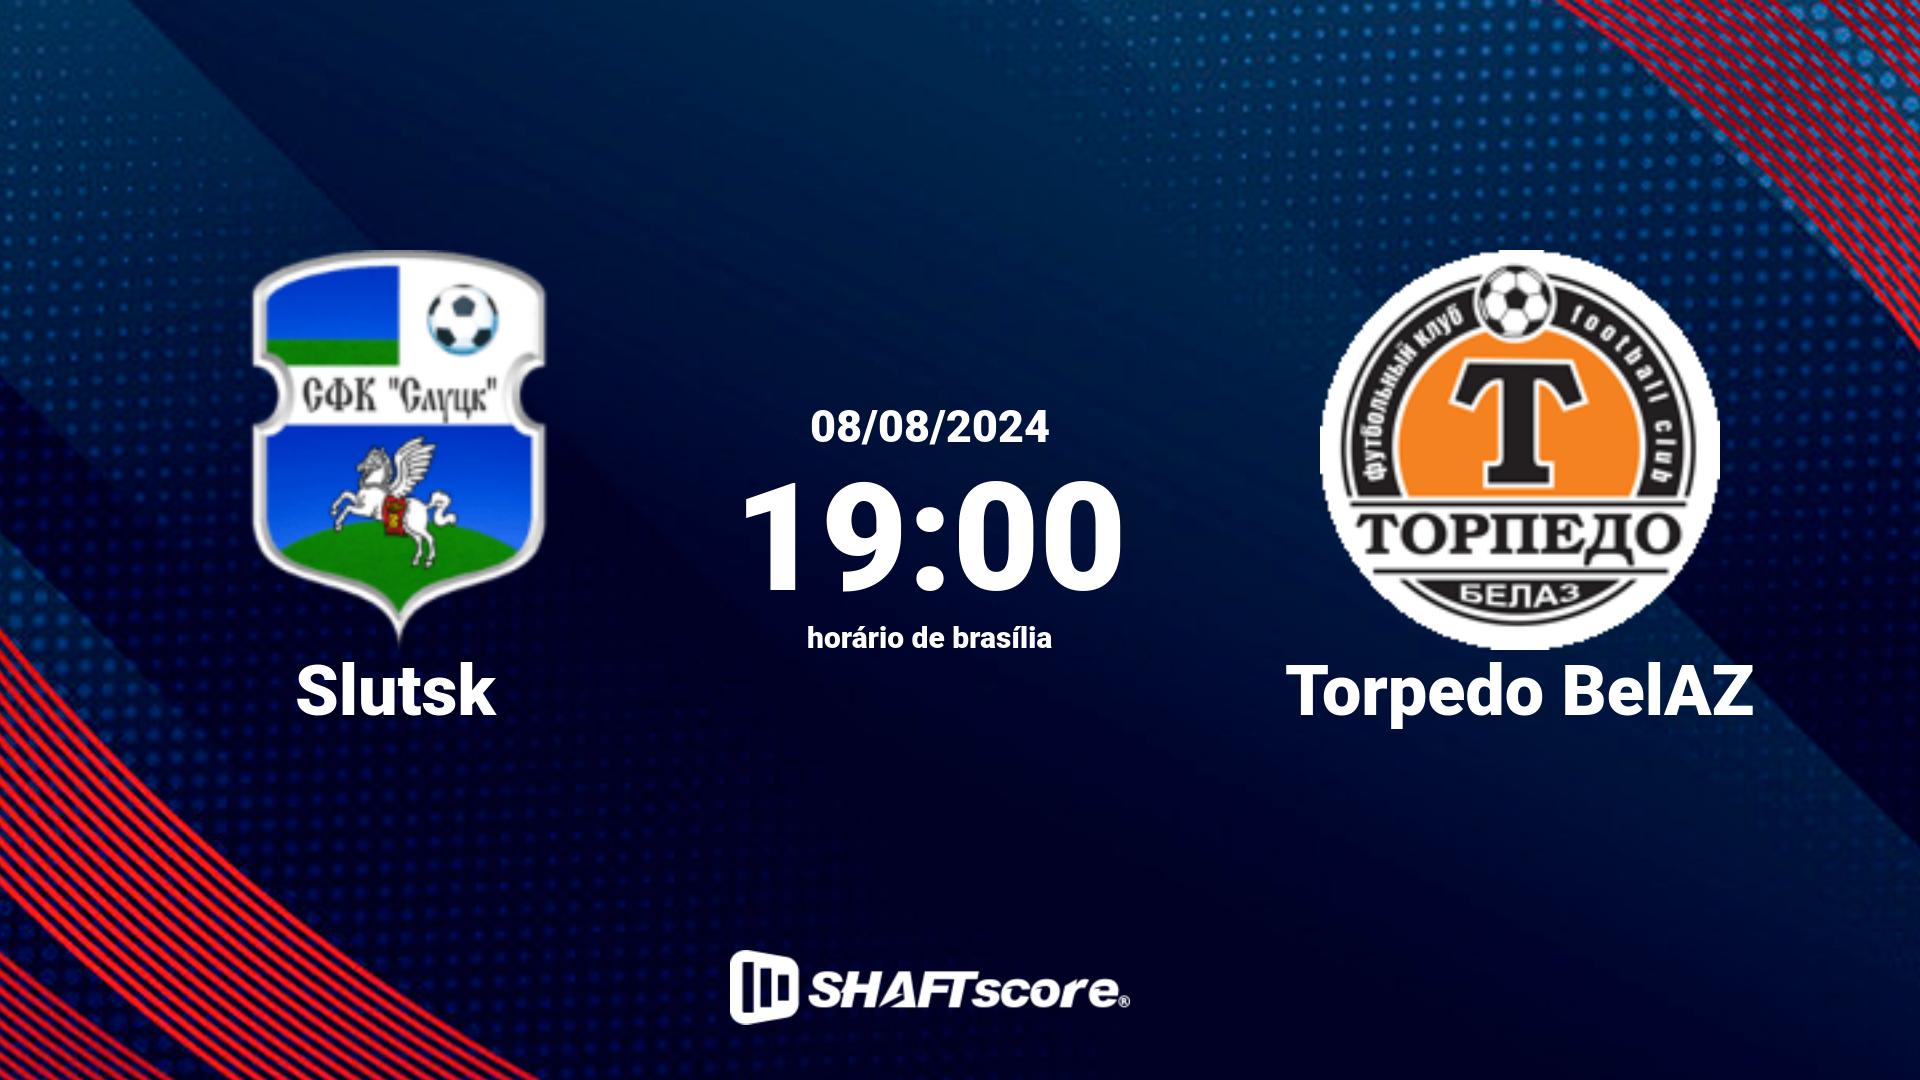 Estatísticas do jogo Slutsk vs Torpedo BelAZ 08.08 19:00